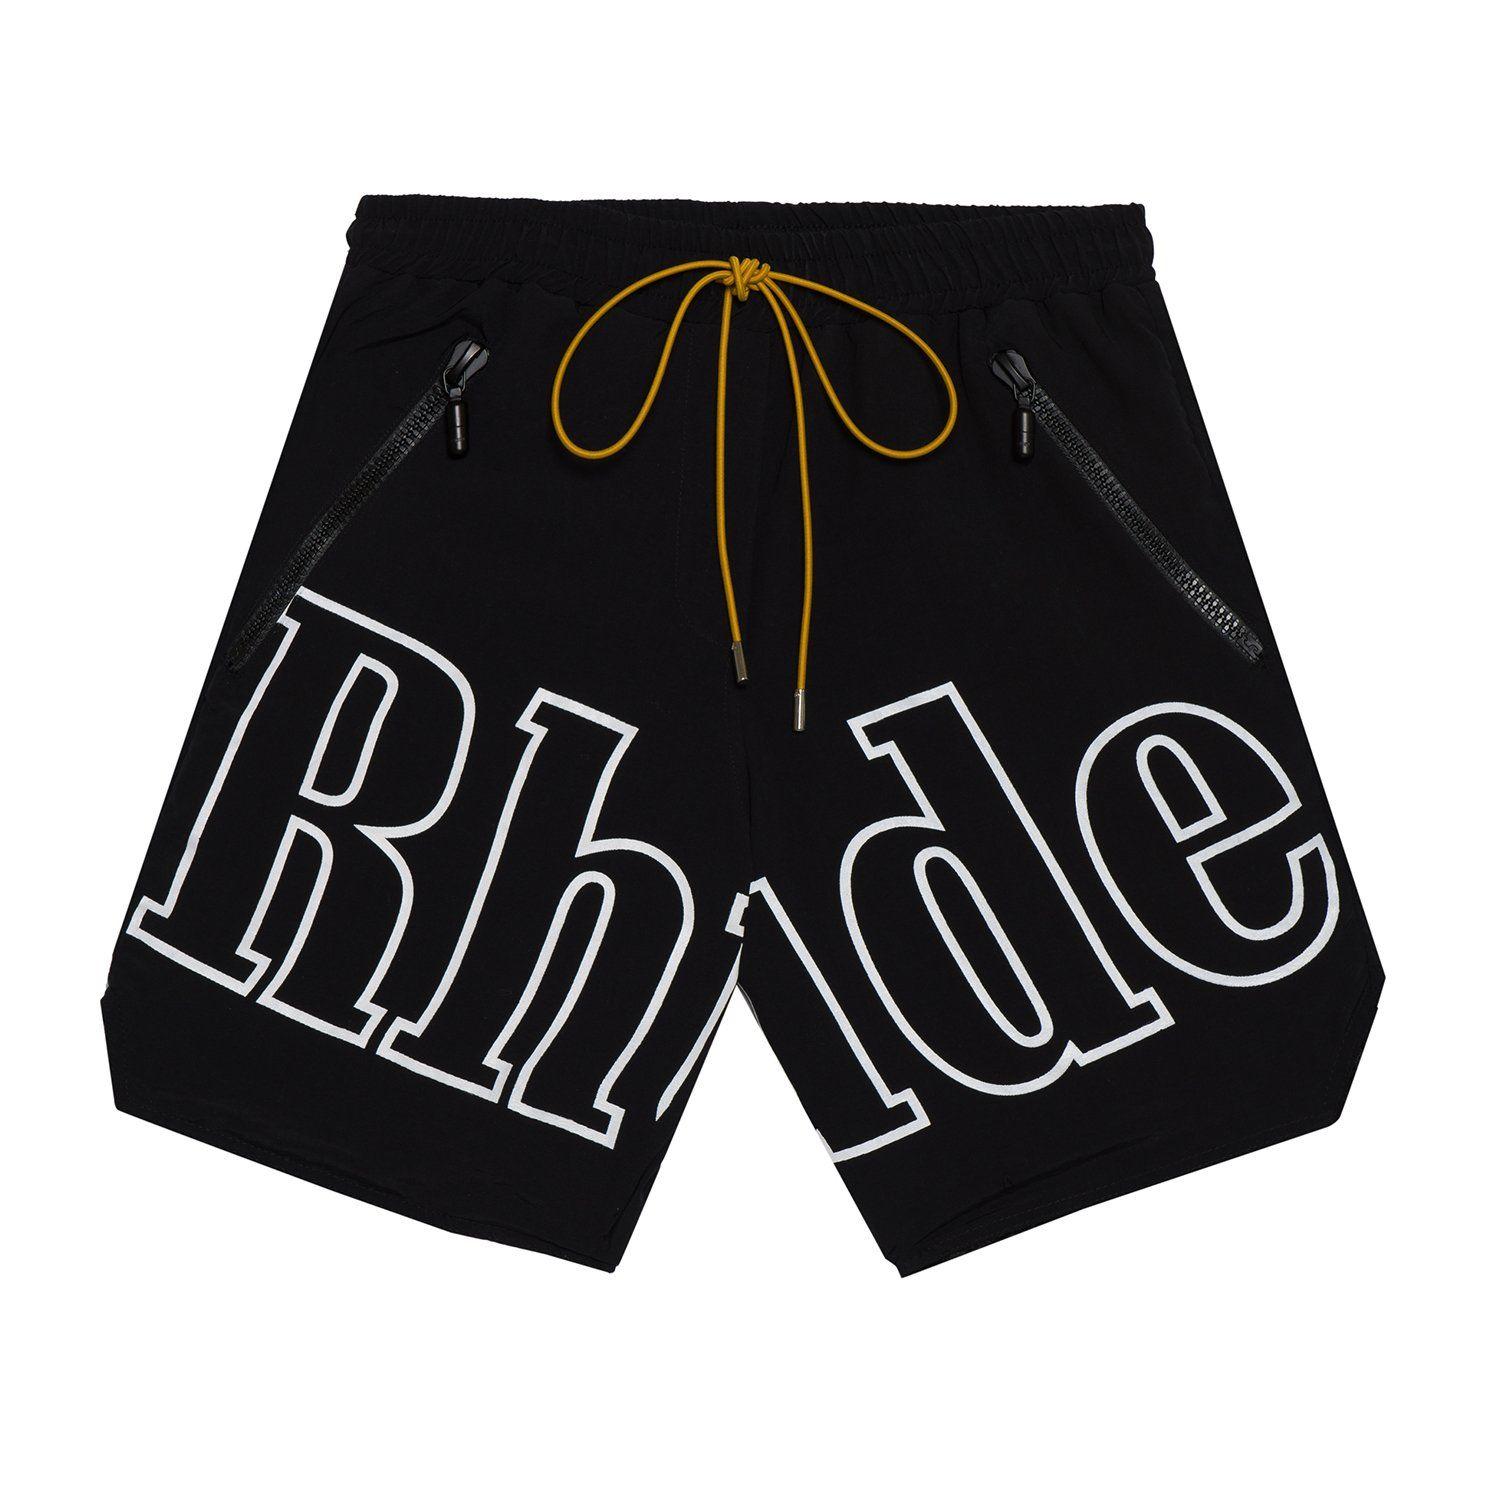 RH Logo - Rh logo swim trunk. R H U D E